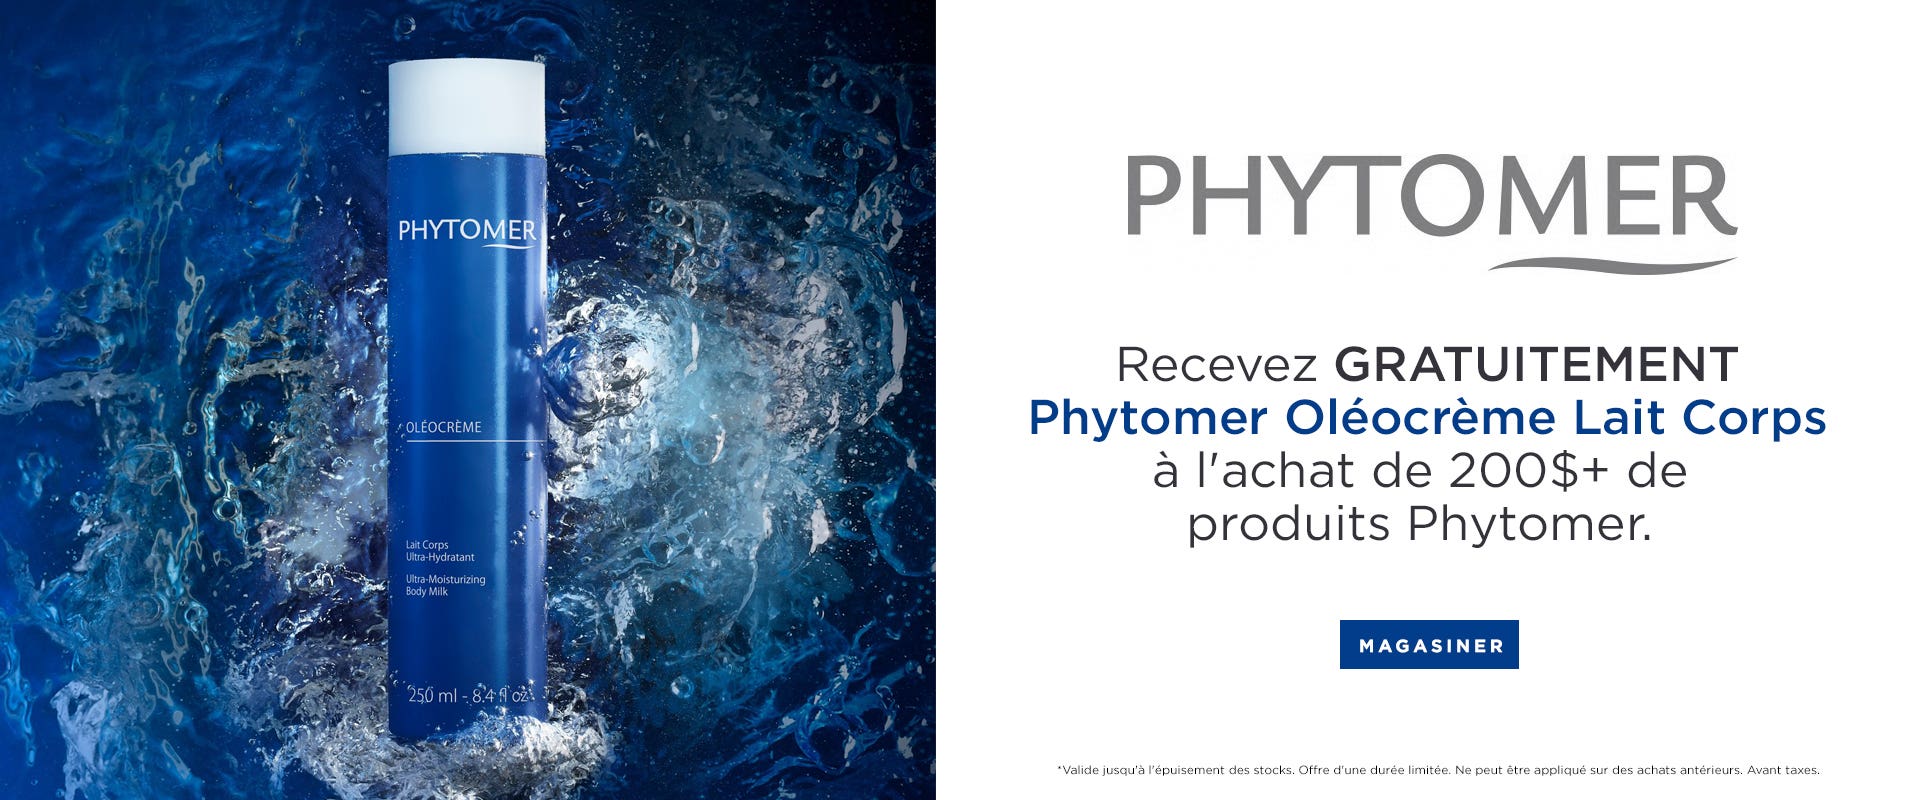 Recevez GRATUITEMENT Phytomer Oléocrème Lait Corps a l'achate de 200$+ de produits Phytomer.